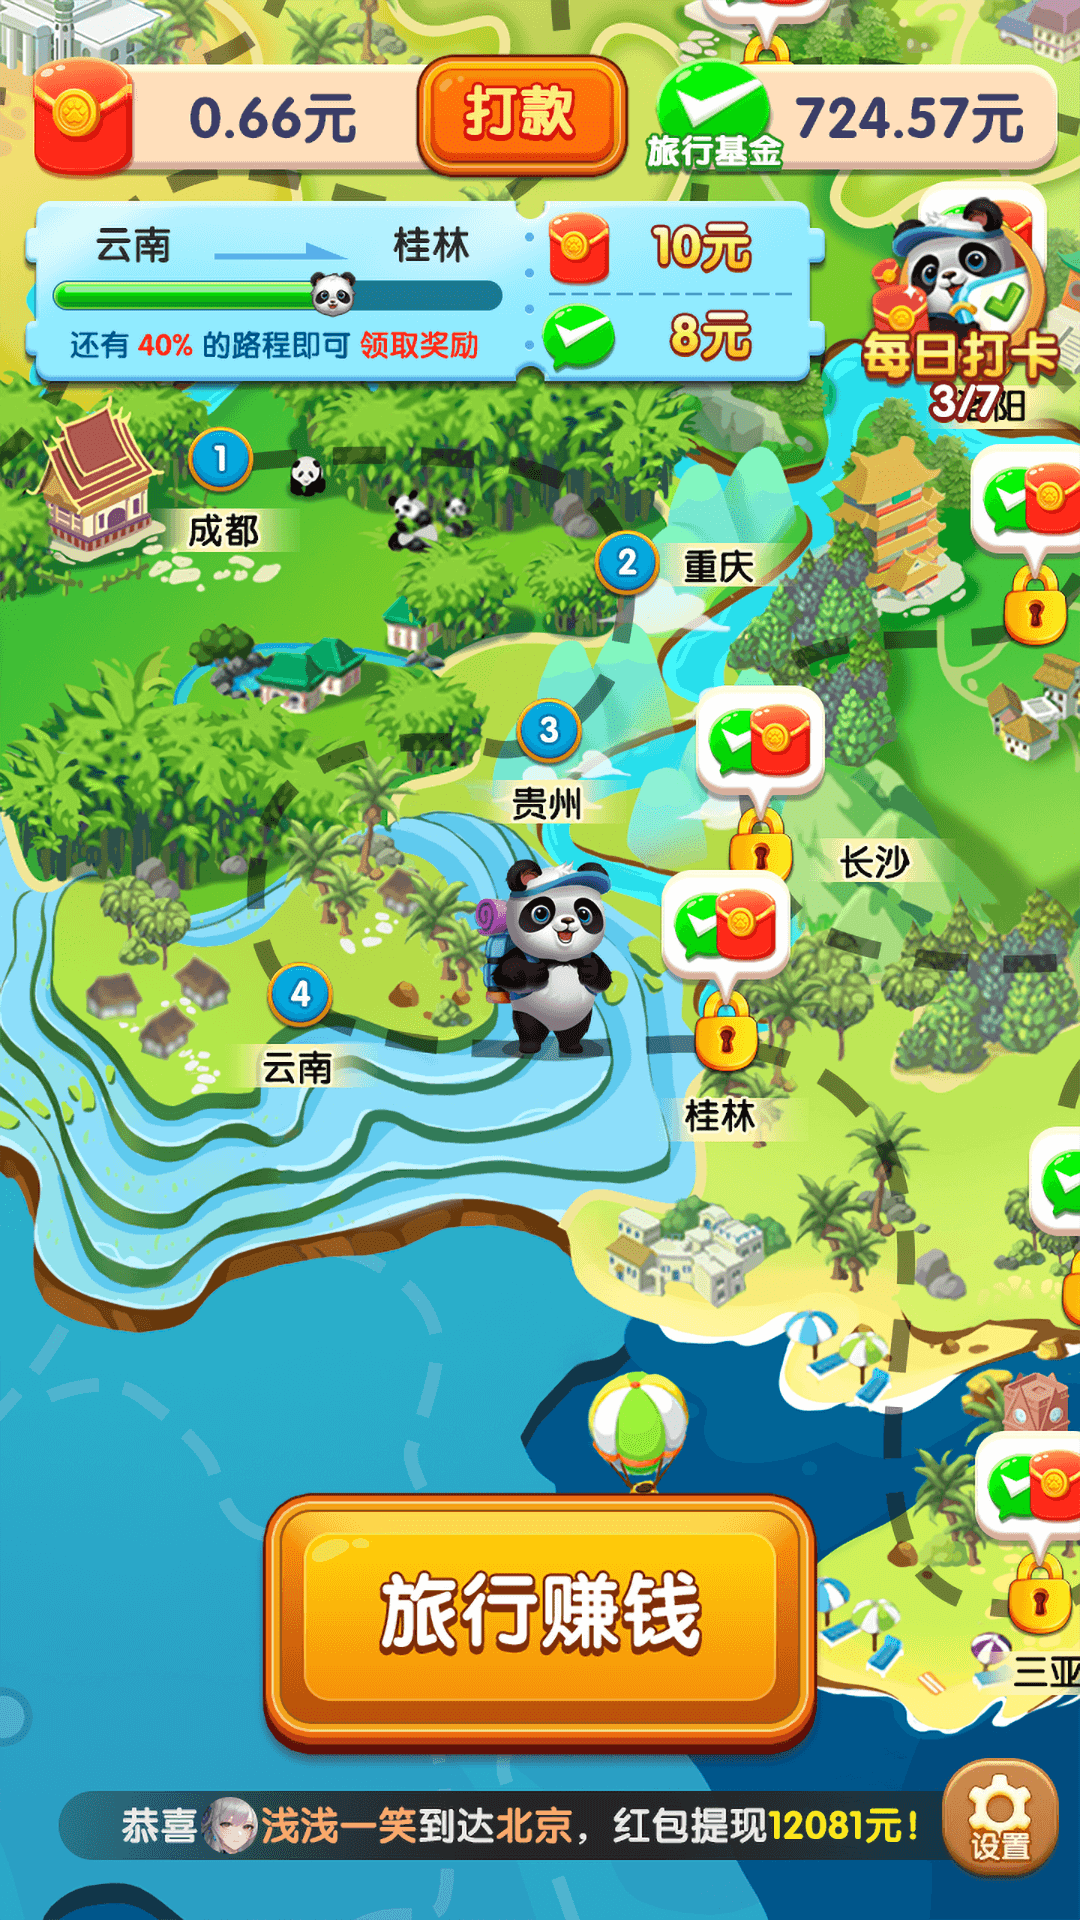 熊猫爱旅行红包版截图1